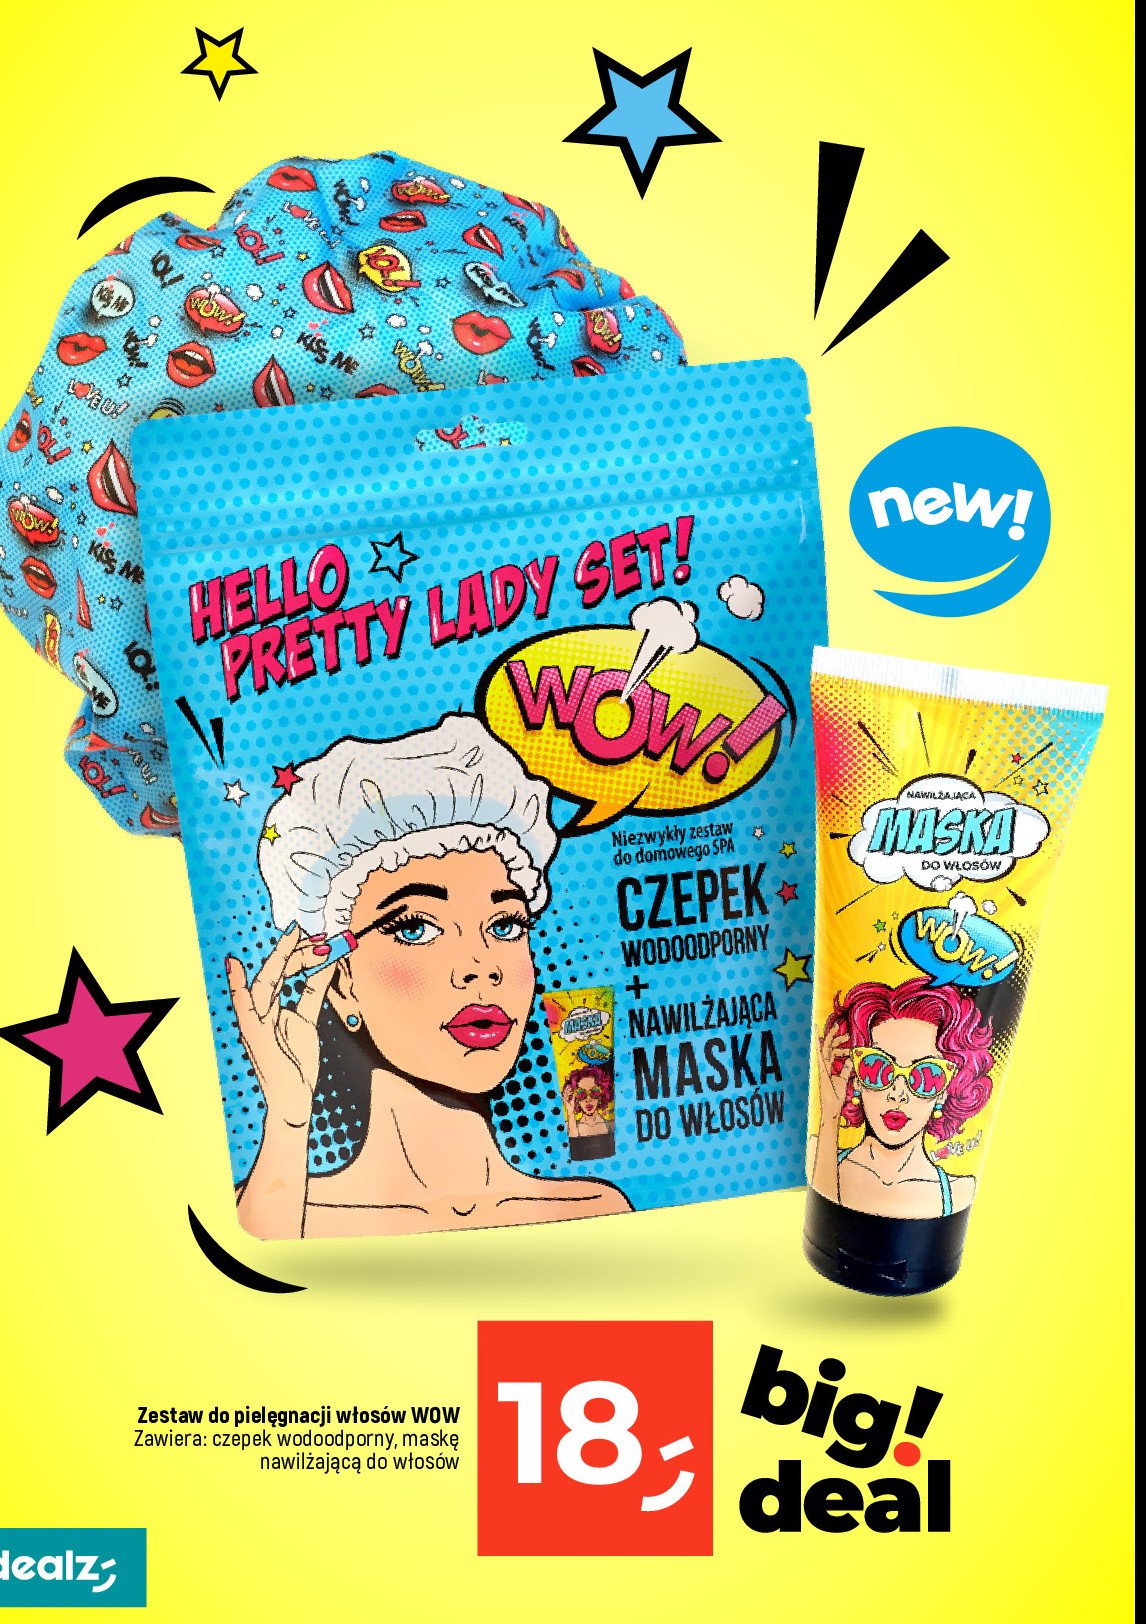 Zestaw do pielęgnacji włosów hello pretty lady: maska do włosów + czepek wodooporny AURA COSMETICS promocja